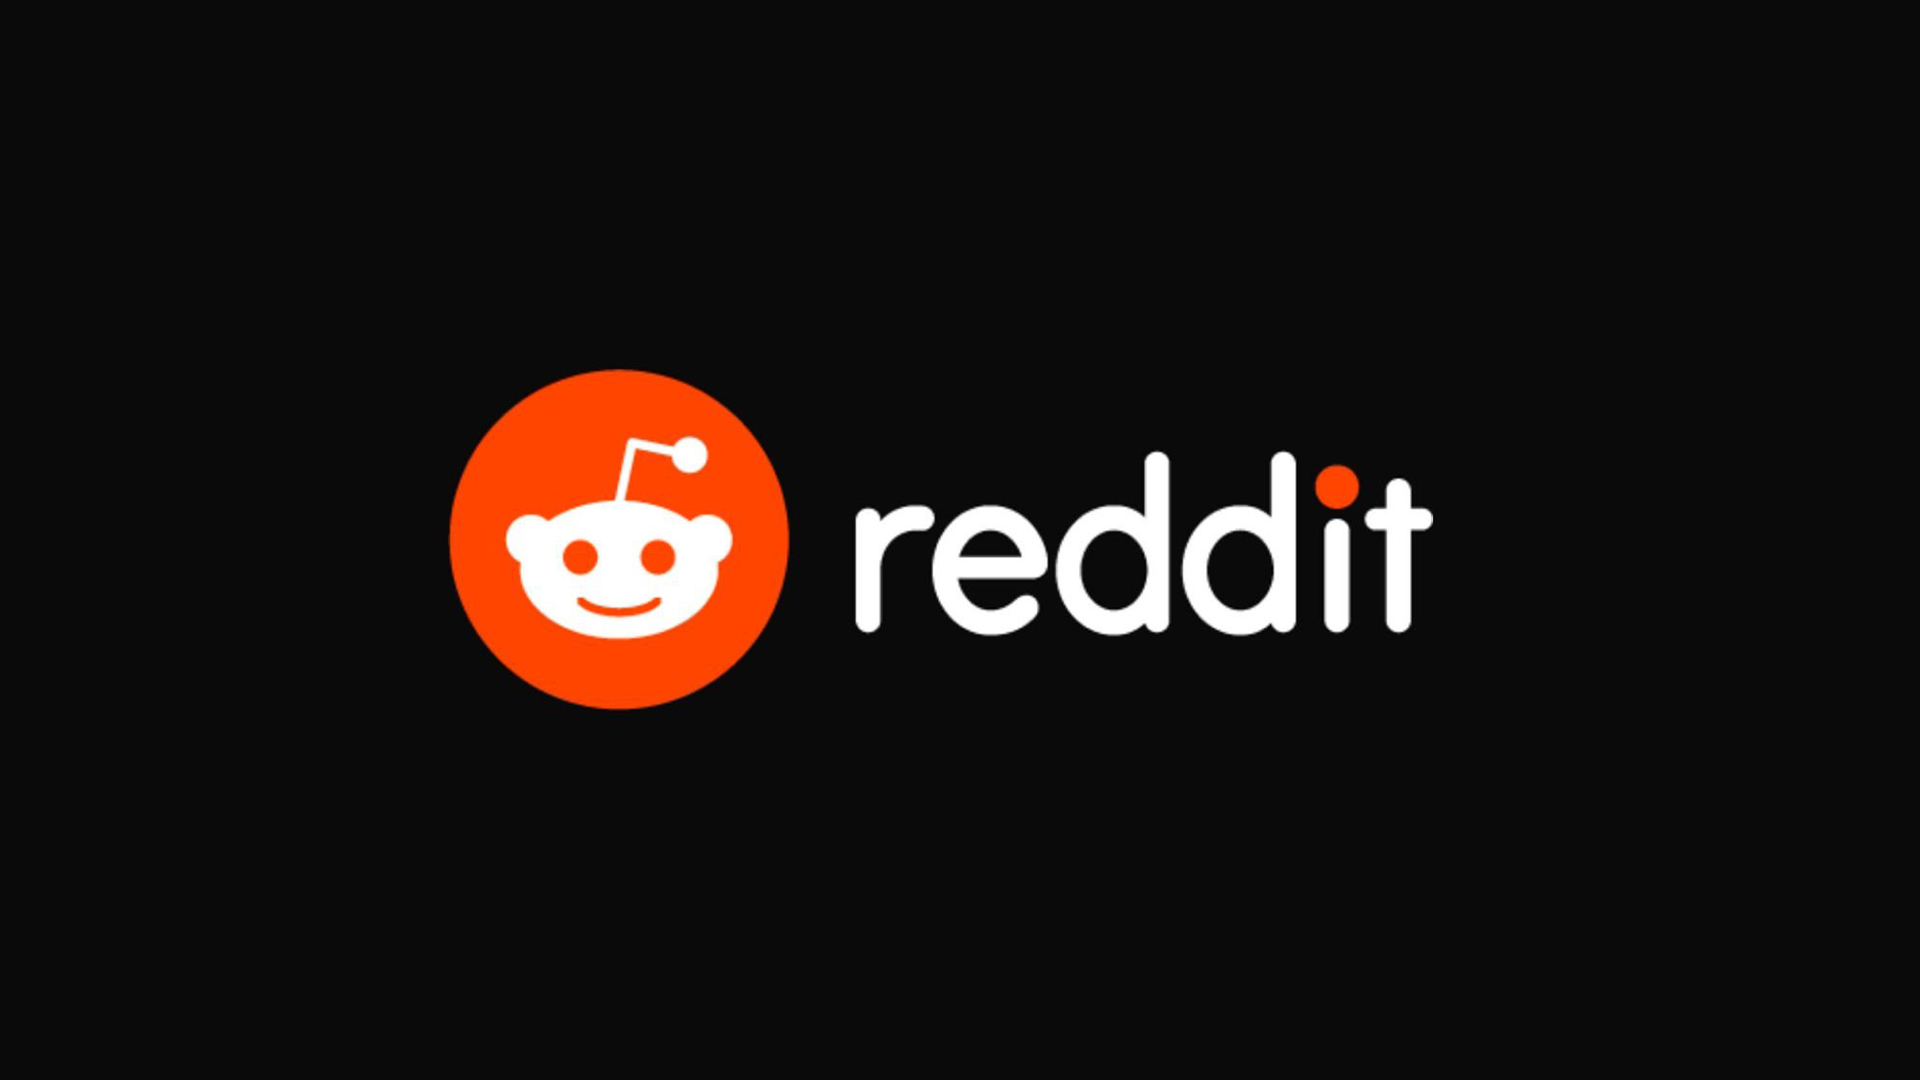 Forumurile Reddit îşi vor întrerupe activitatea începând de luni, ca formă de protest la deciziile recente ale companiei